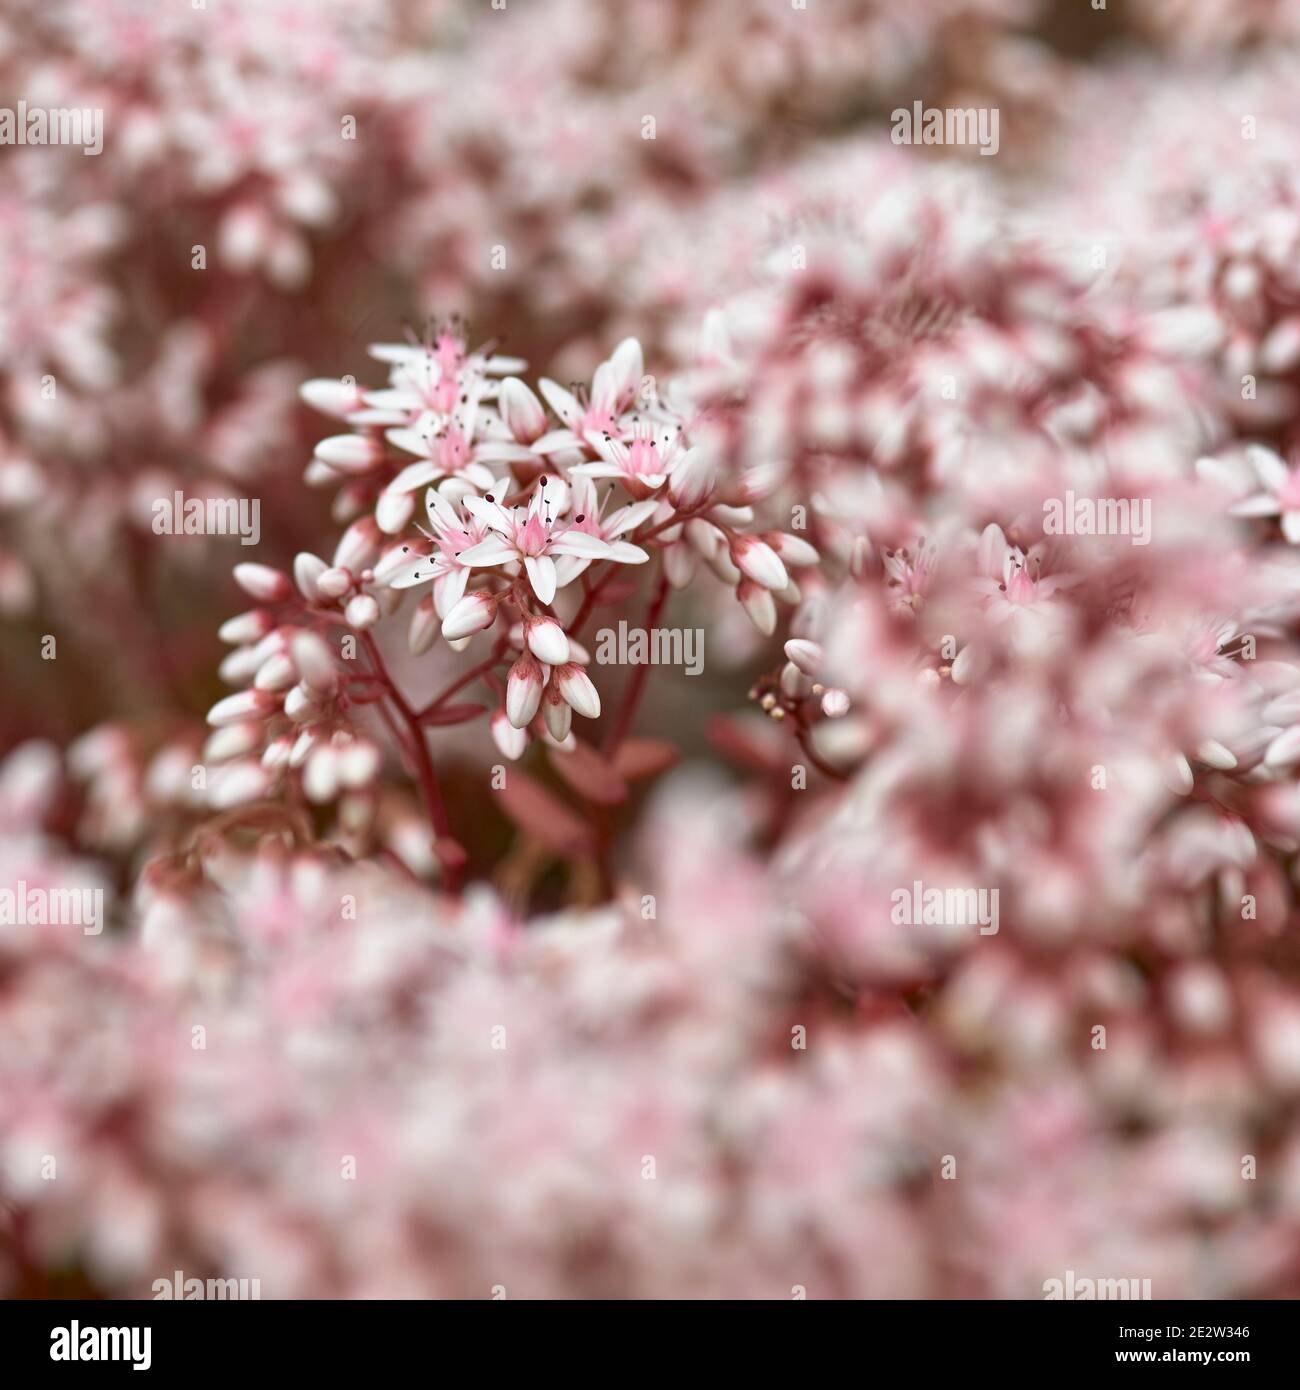 Sedum album, White Stonecrop flower Stock Photo